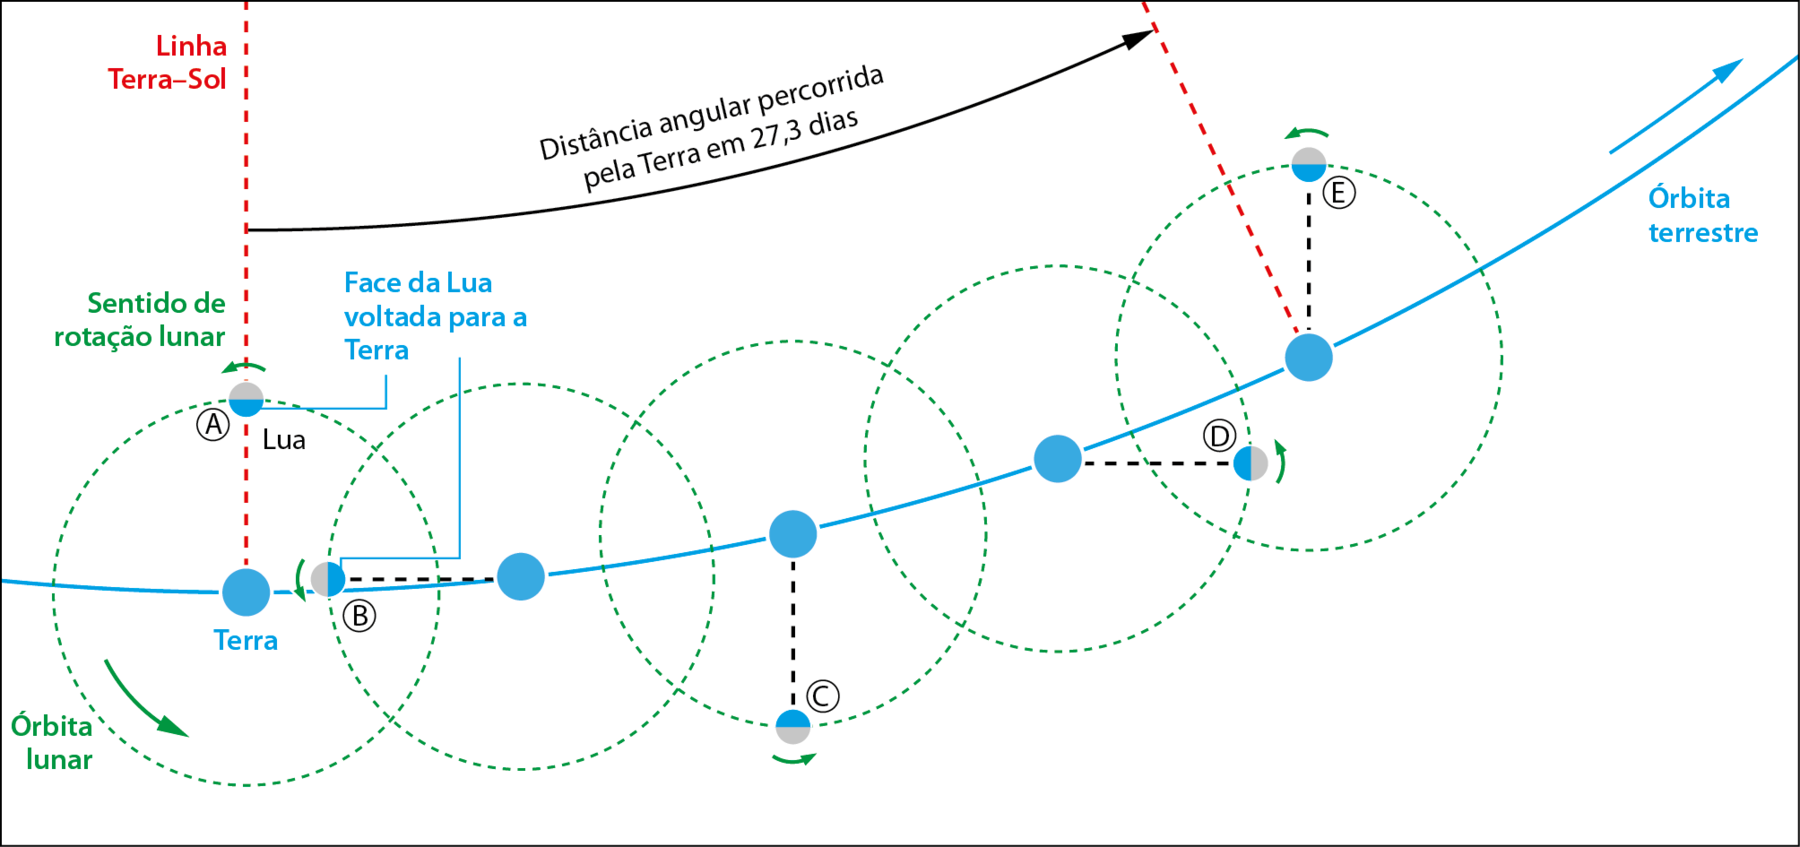 Ilustração. Ponto A. À esquerda, Terra, representada por uma bolinha azul. Uma linha curva passando sobre ela indica a órbita terrestre, com uma seta para a direita. Acima da Terra, a Lua, representada por uma bolinha metade azul, metade cinza. Em azul é a face da Lua voltada para a Terra. A órbita lunar é representada por um círculo pontilhado ao redor da Terra, com uma seta indicando o sentido anti-horário. Na mesma direção da Terra e da Lua, verticalmente, há uma linha tracejada vermelha, indicando Linha Terra-Sol. No ponto B a Lua está à esquerda do planeta. No ponto C a Lua está abaixo. No ponto D ela está à direita. E no ponto E ela quase retorna à posição inicial no ponto A. Entre A e E há a indicação: distância angular percorrida pela Terra em 27,3 dias.